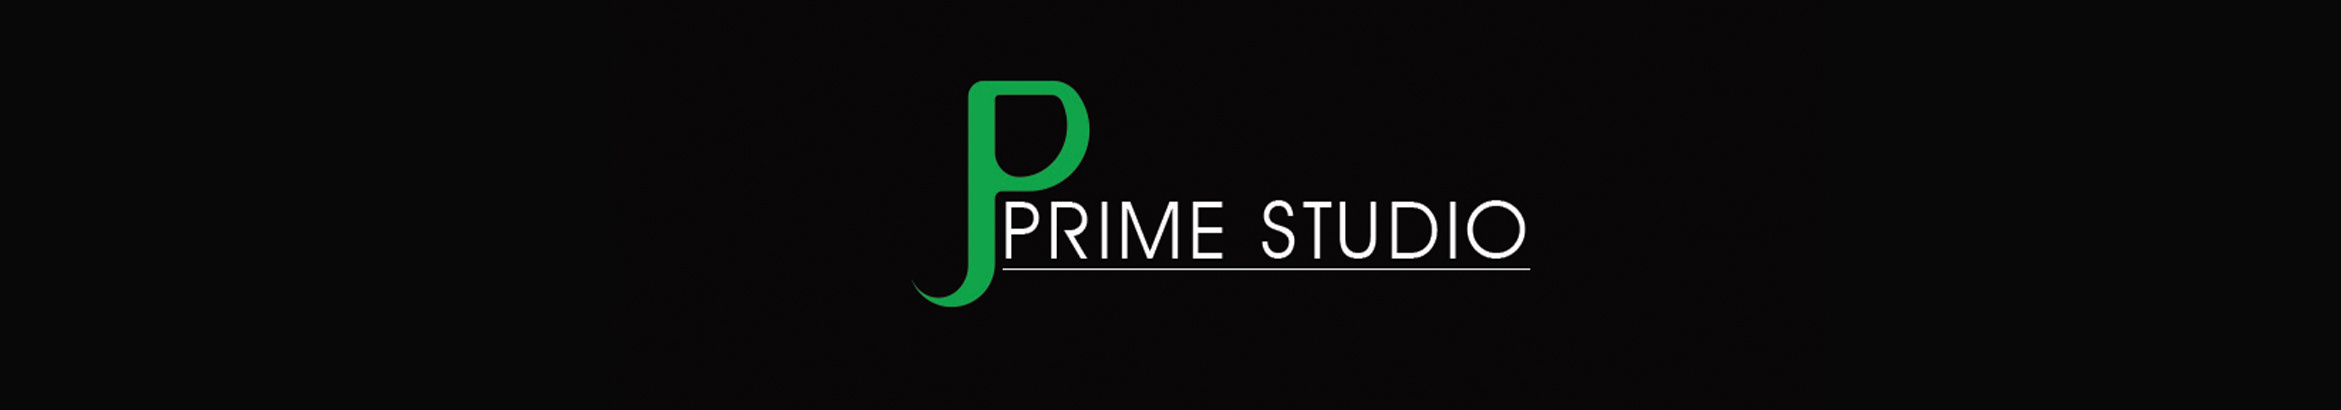 Prime Studio profil başlığı